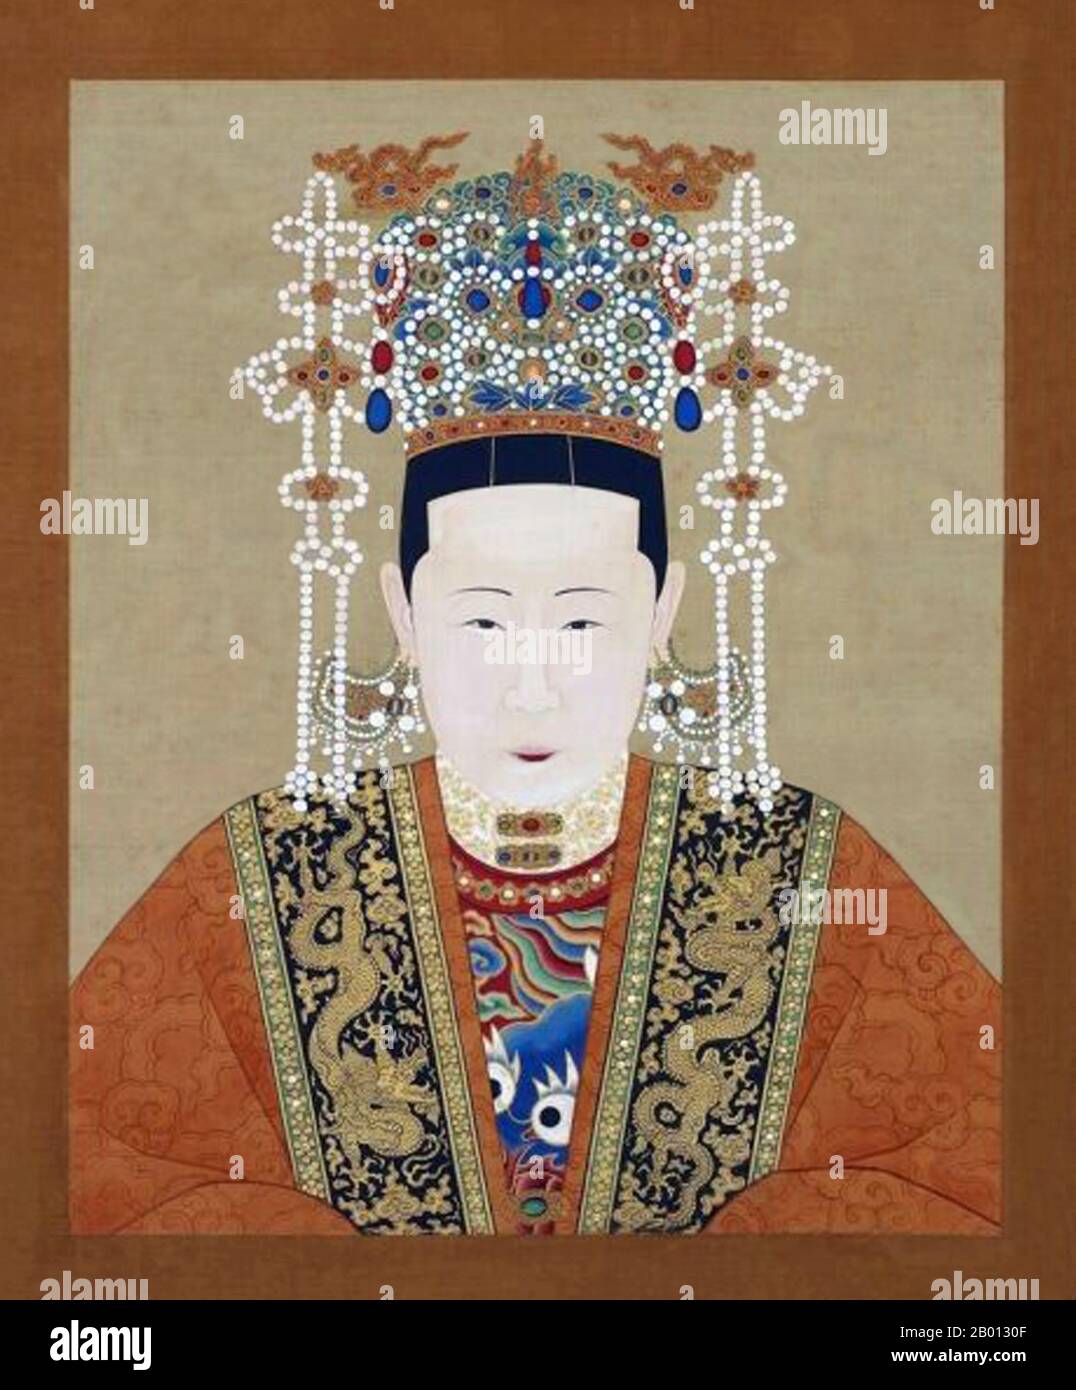 Cina: Imperatrice Xiao Cheng Jing (1471-1541), consorte del 10° imperatore Ming Hongzhi (r. 1487-1505). Pittura a chiocciola sospesa, XV-XVII secolo. L'imperatrice Dowager Zhang (1471-1541), ex imperatrice Xiaochengjing, fu la consorte dell'Imperatore Hongzhi e madre dell'Imperatore Zhengde (r. 1505-1521) della dinastia Ming. Suo marito Hongzhi era l'unico imperatore della storia cinese ad essere stato monogamo, non avendo concubine ed essendo solo dedicato a lei. Si diceva che fosse stata vana, esigente e materialista, e consegnò favori illimitati ai suoi familiari. Foto Stock